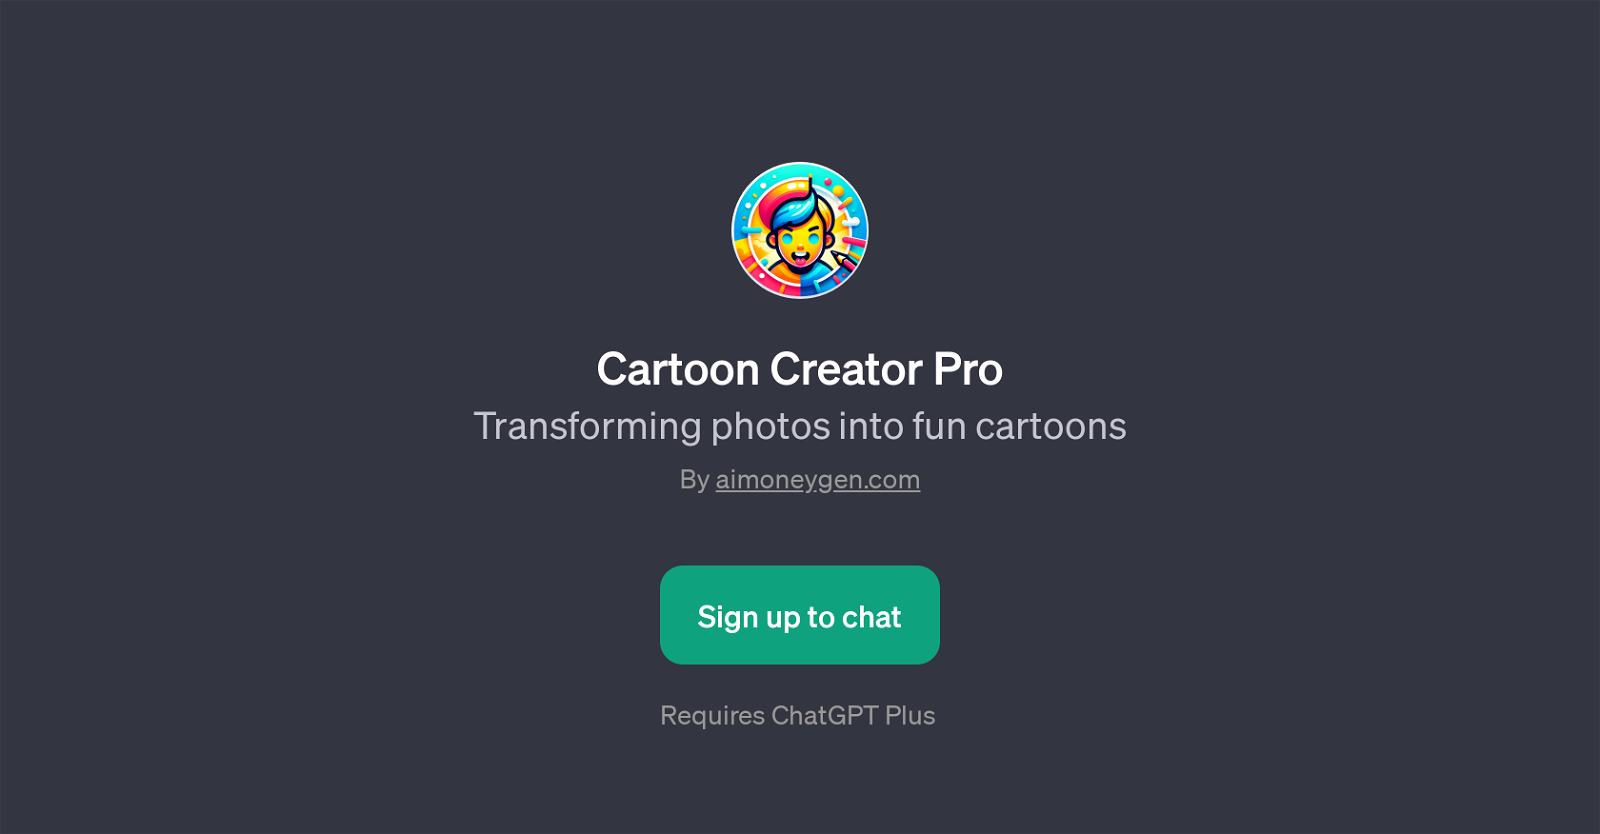 Cartoon Creator Pro website